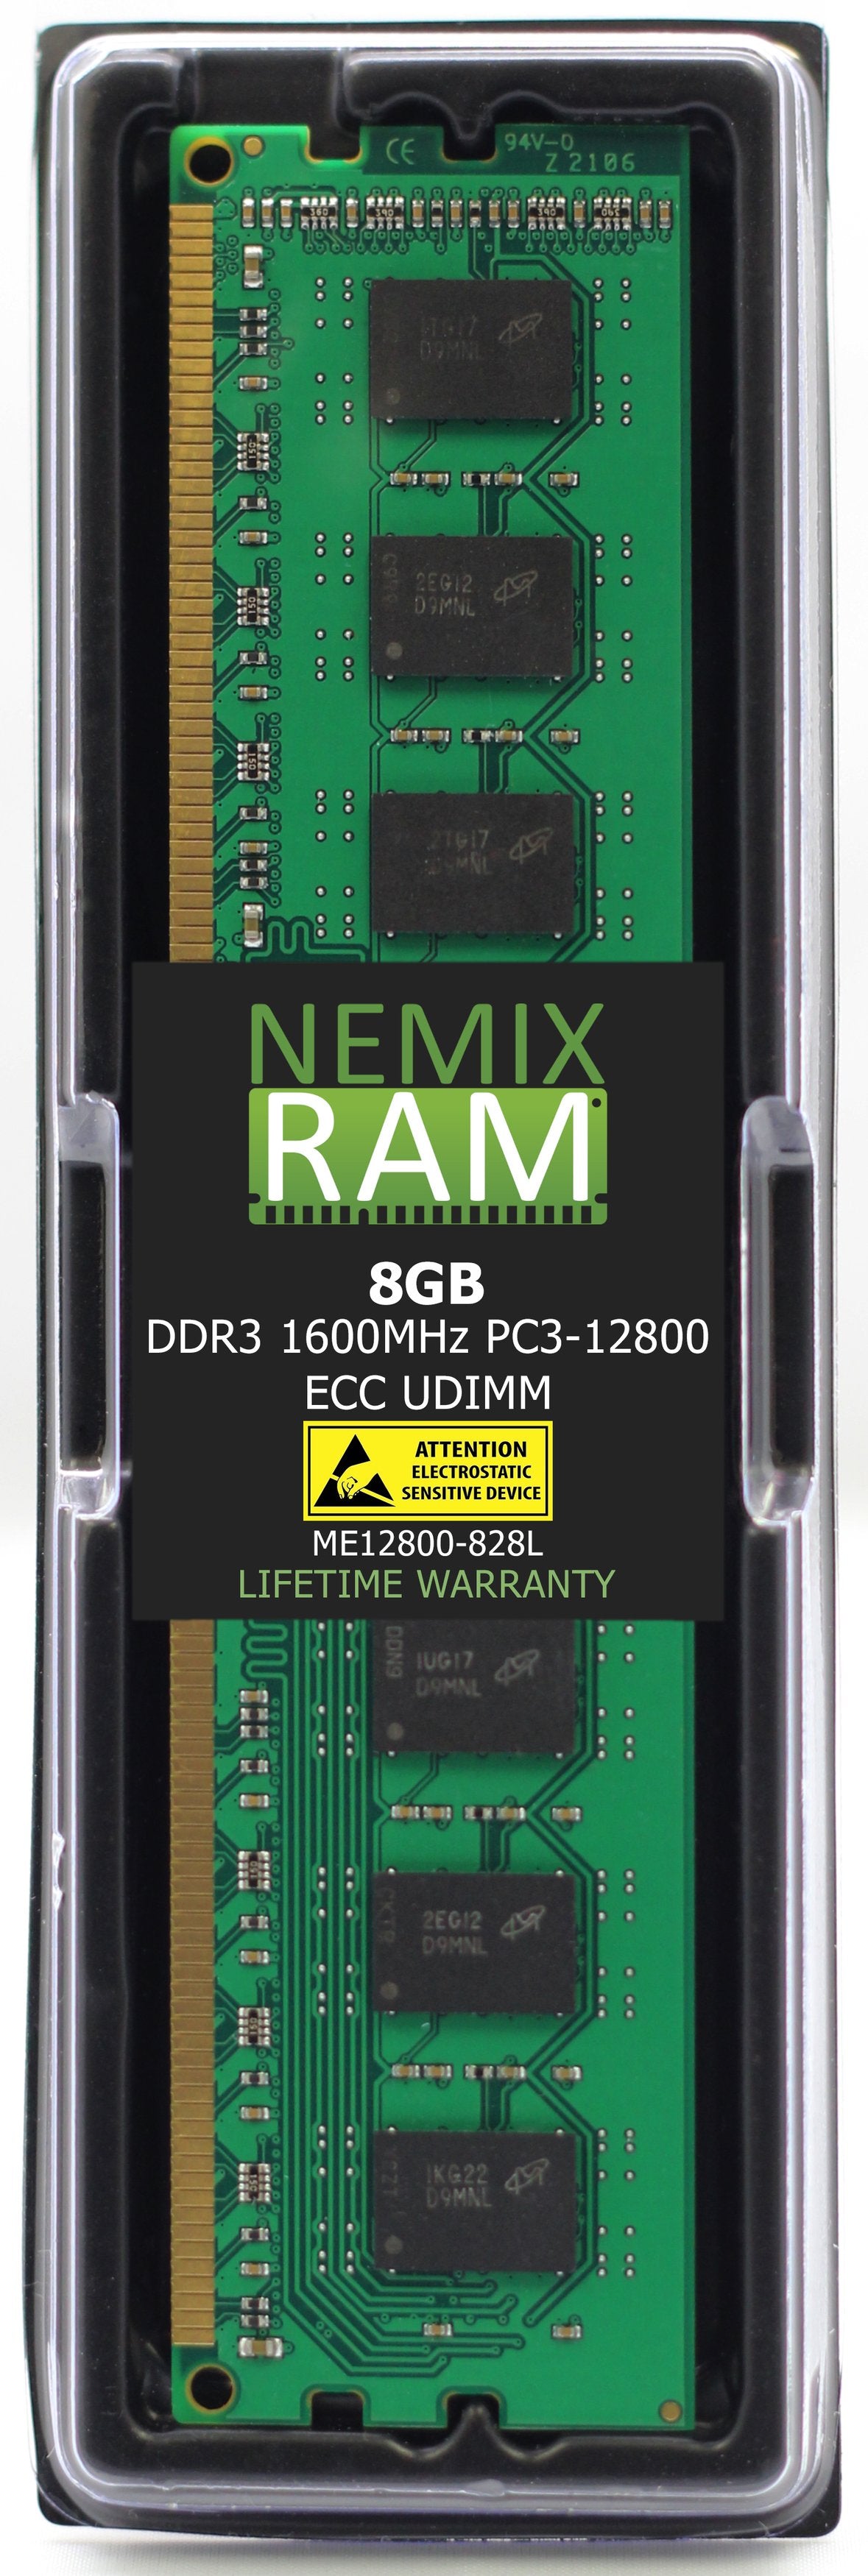 8GB DDR3 1600MHZ PC3-12800 ECC UDIMM Compatible with Supermicro MEM-DR380L-HL02-EU16